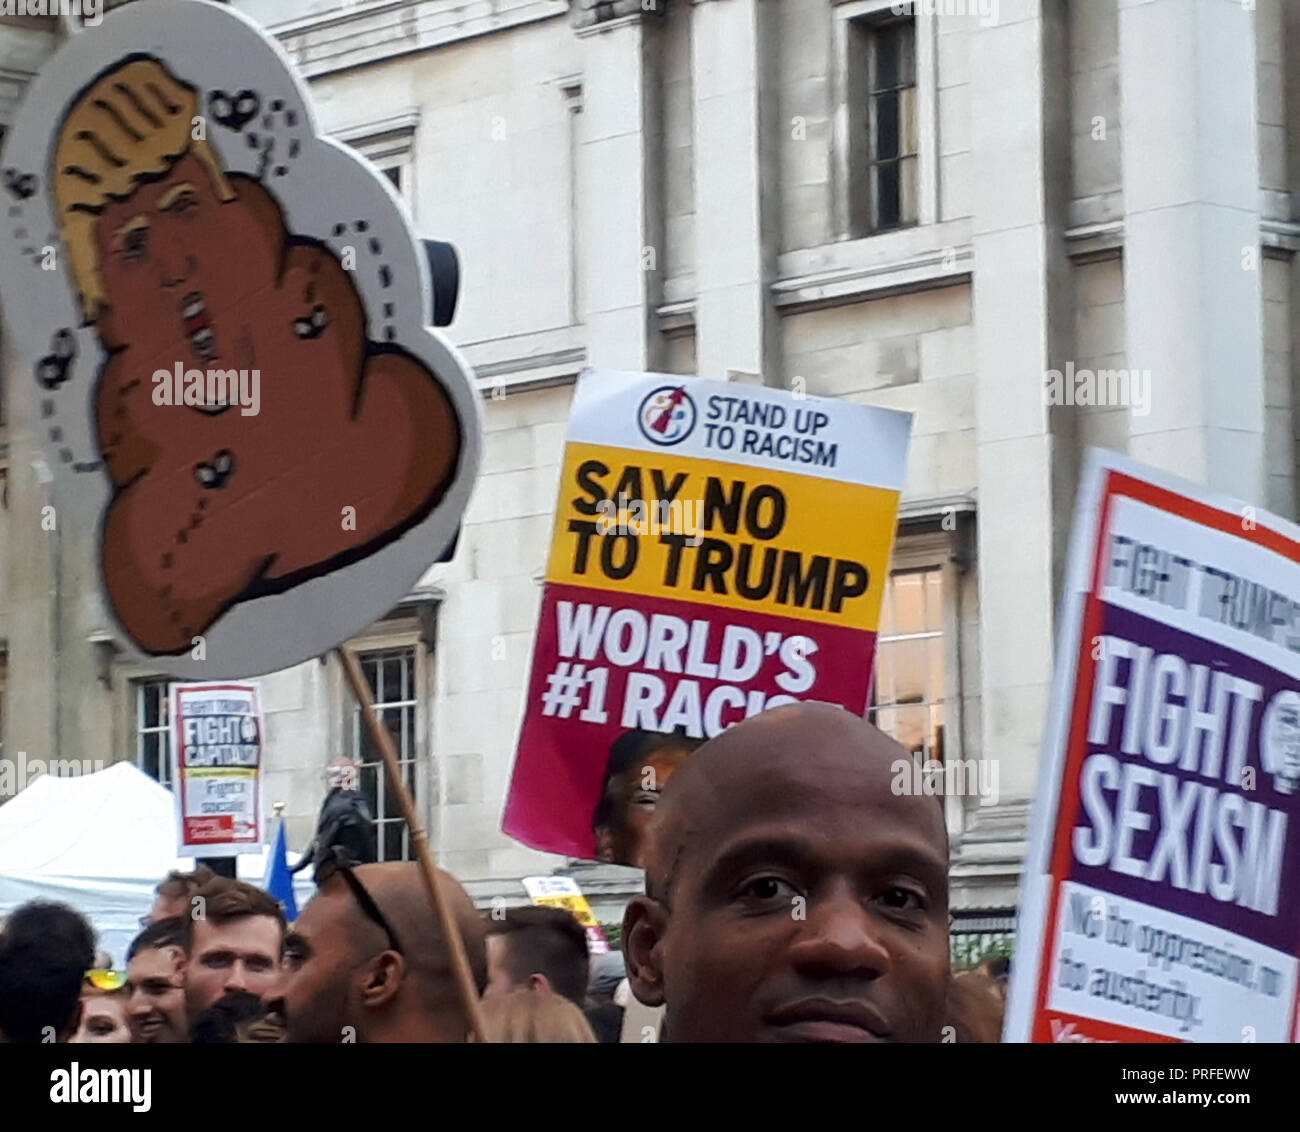 Londra, UK, 13 luglio 2018. 100.000 persone protestano contro la visita del Presidente statunitense Donald Trump. I manifestanti si raccolgono in Trafalgar Square. Cartelli possono essere visto che raffigurano Trump come un poo circondato da mosche e facendo riferimento al razzismo e sessismo. Foto Stock